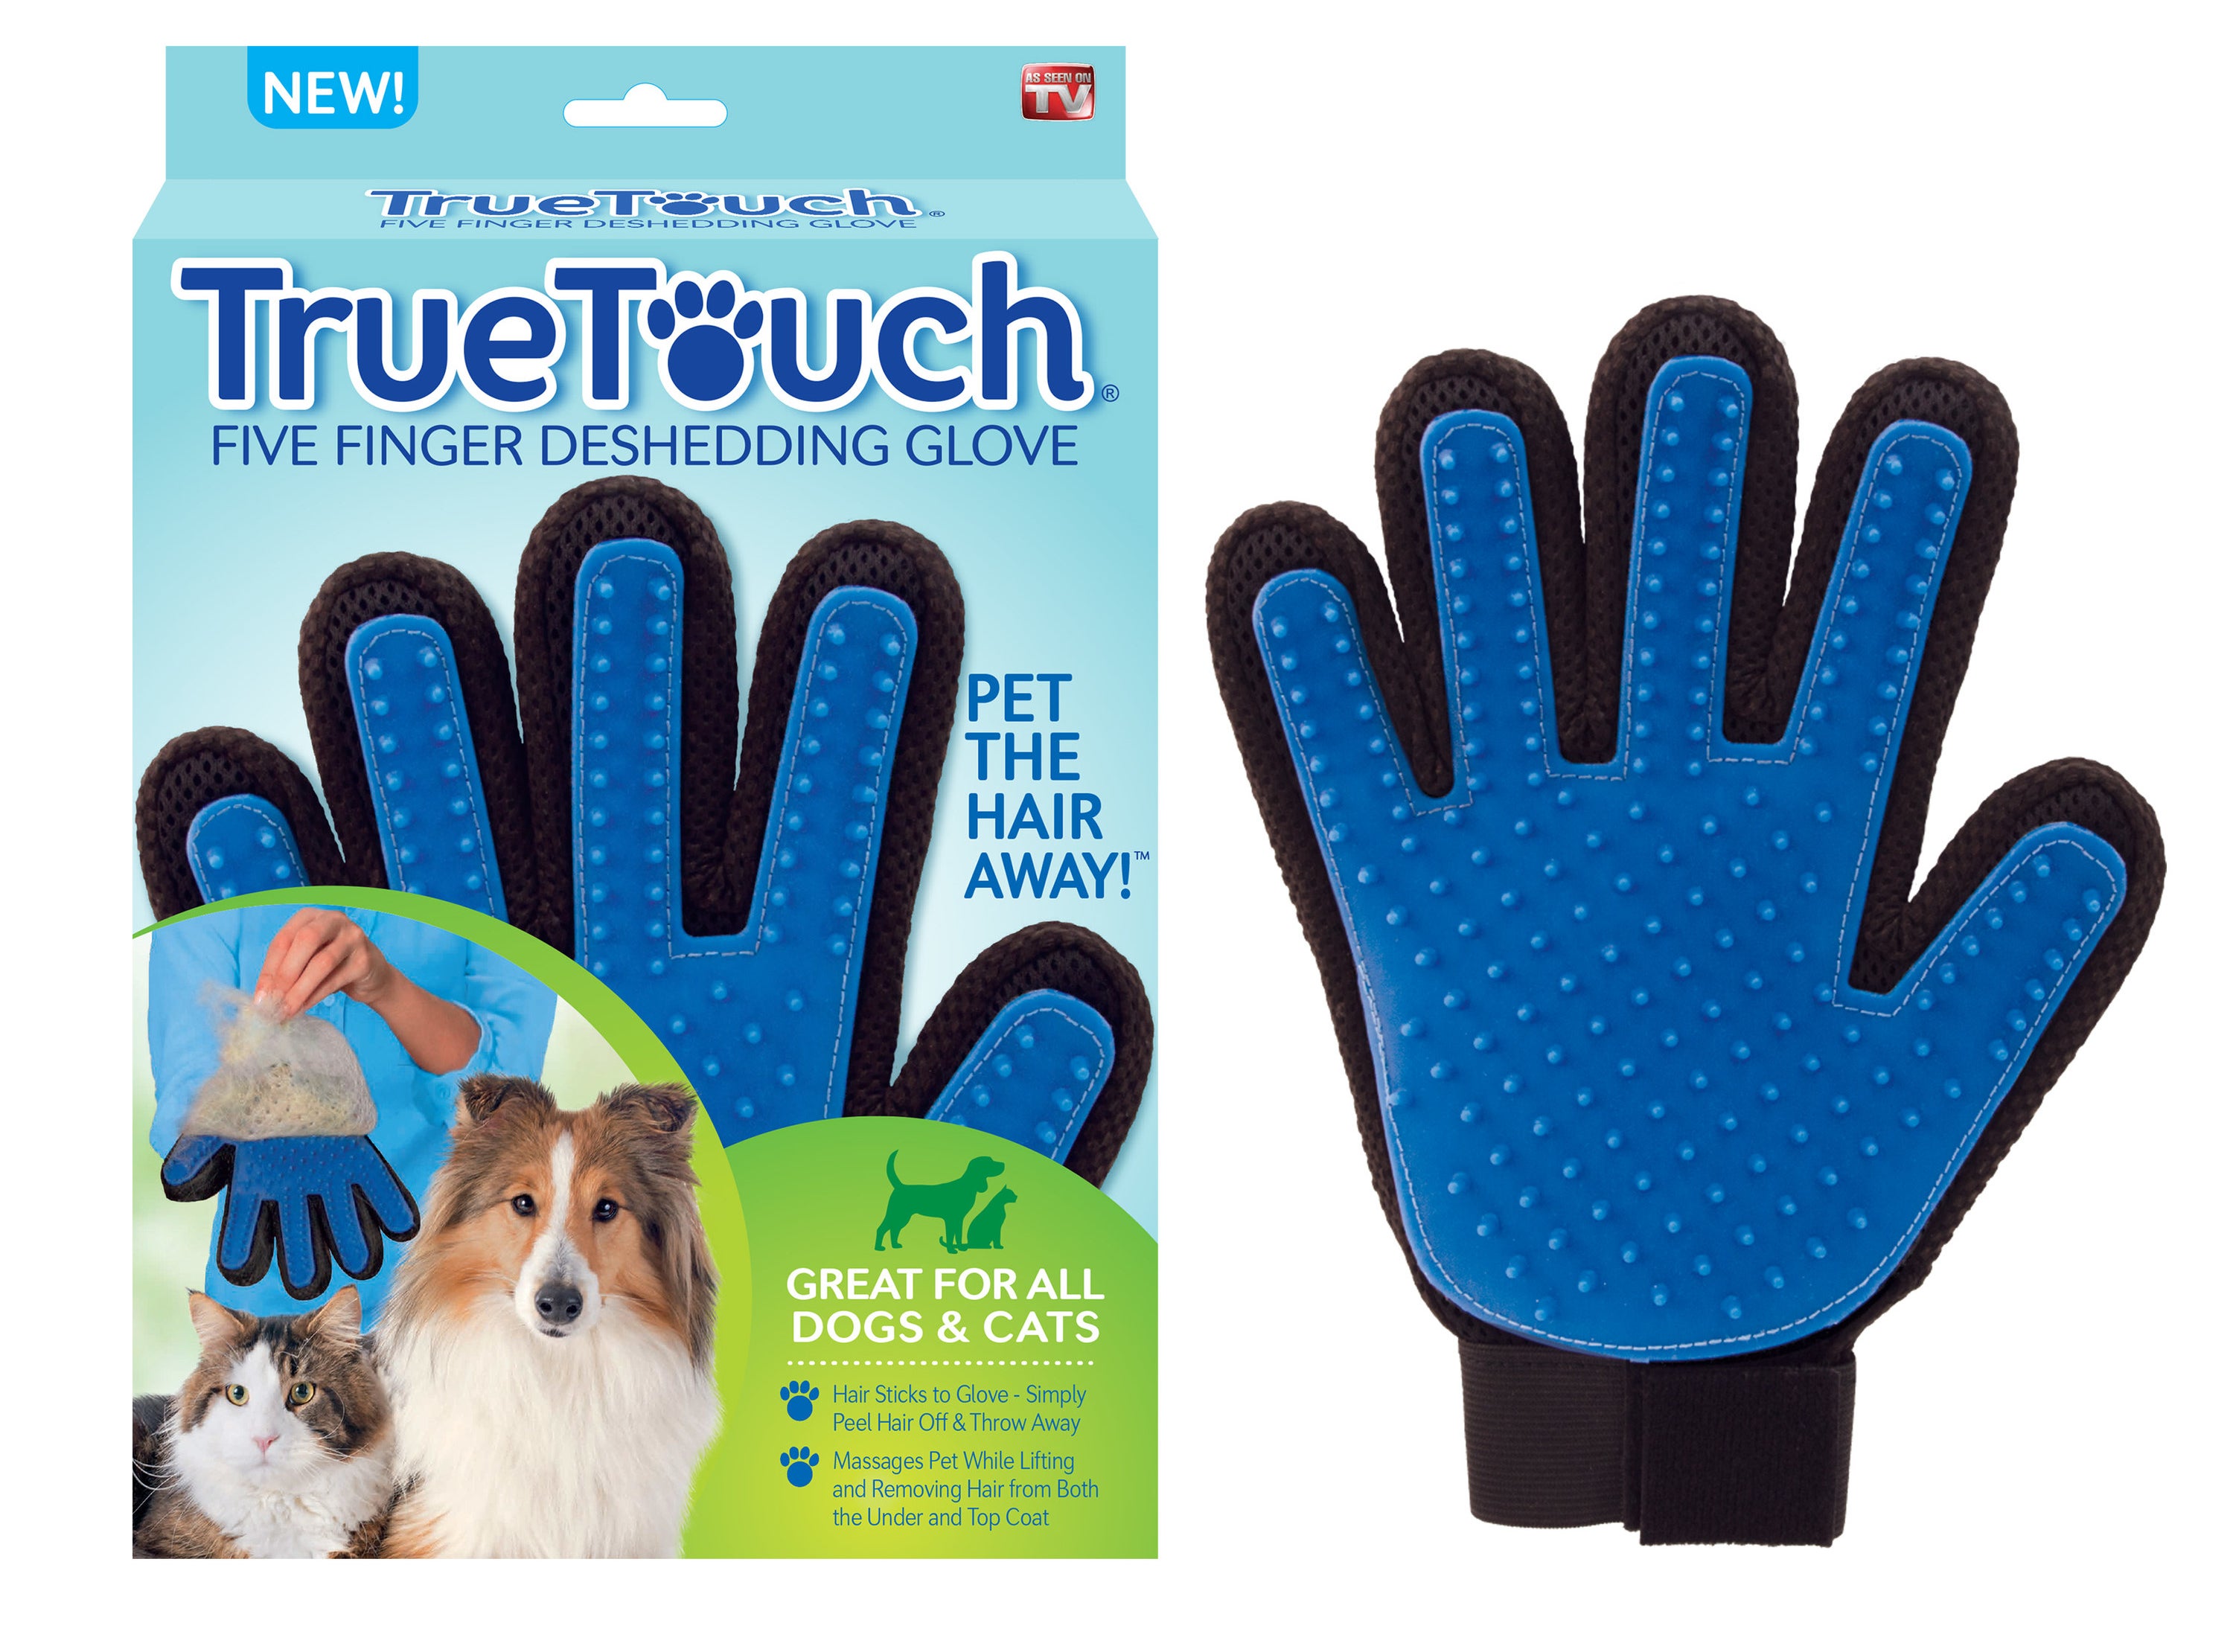 True Touch deshedding glove 